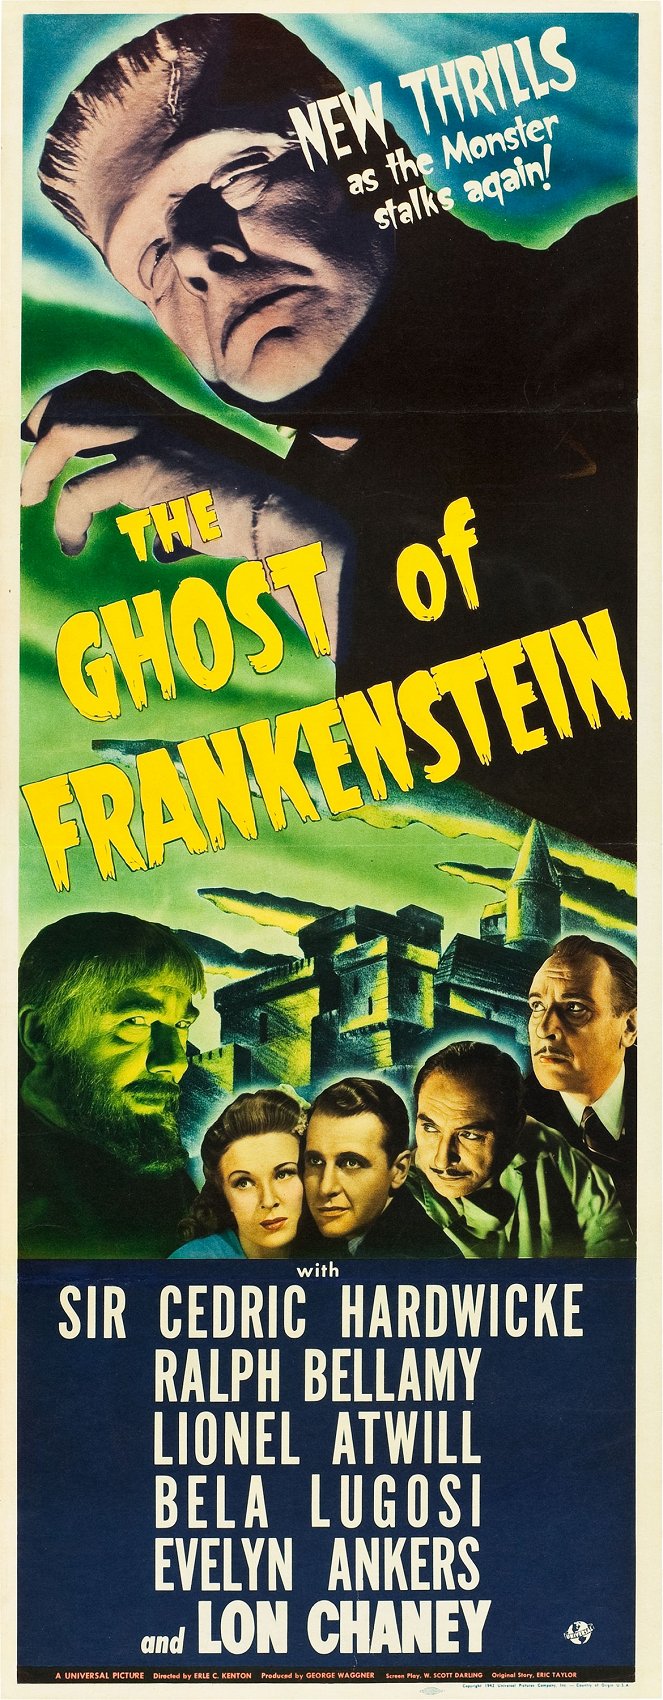 Le Spectre de Frankenstein - Affiches